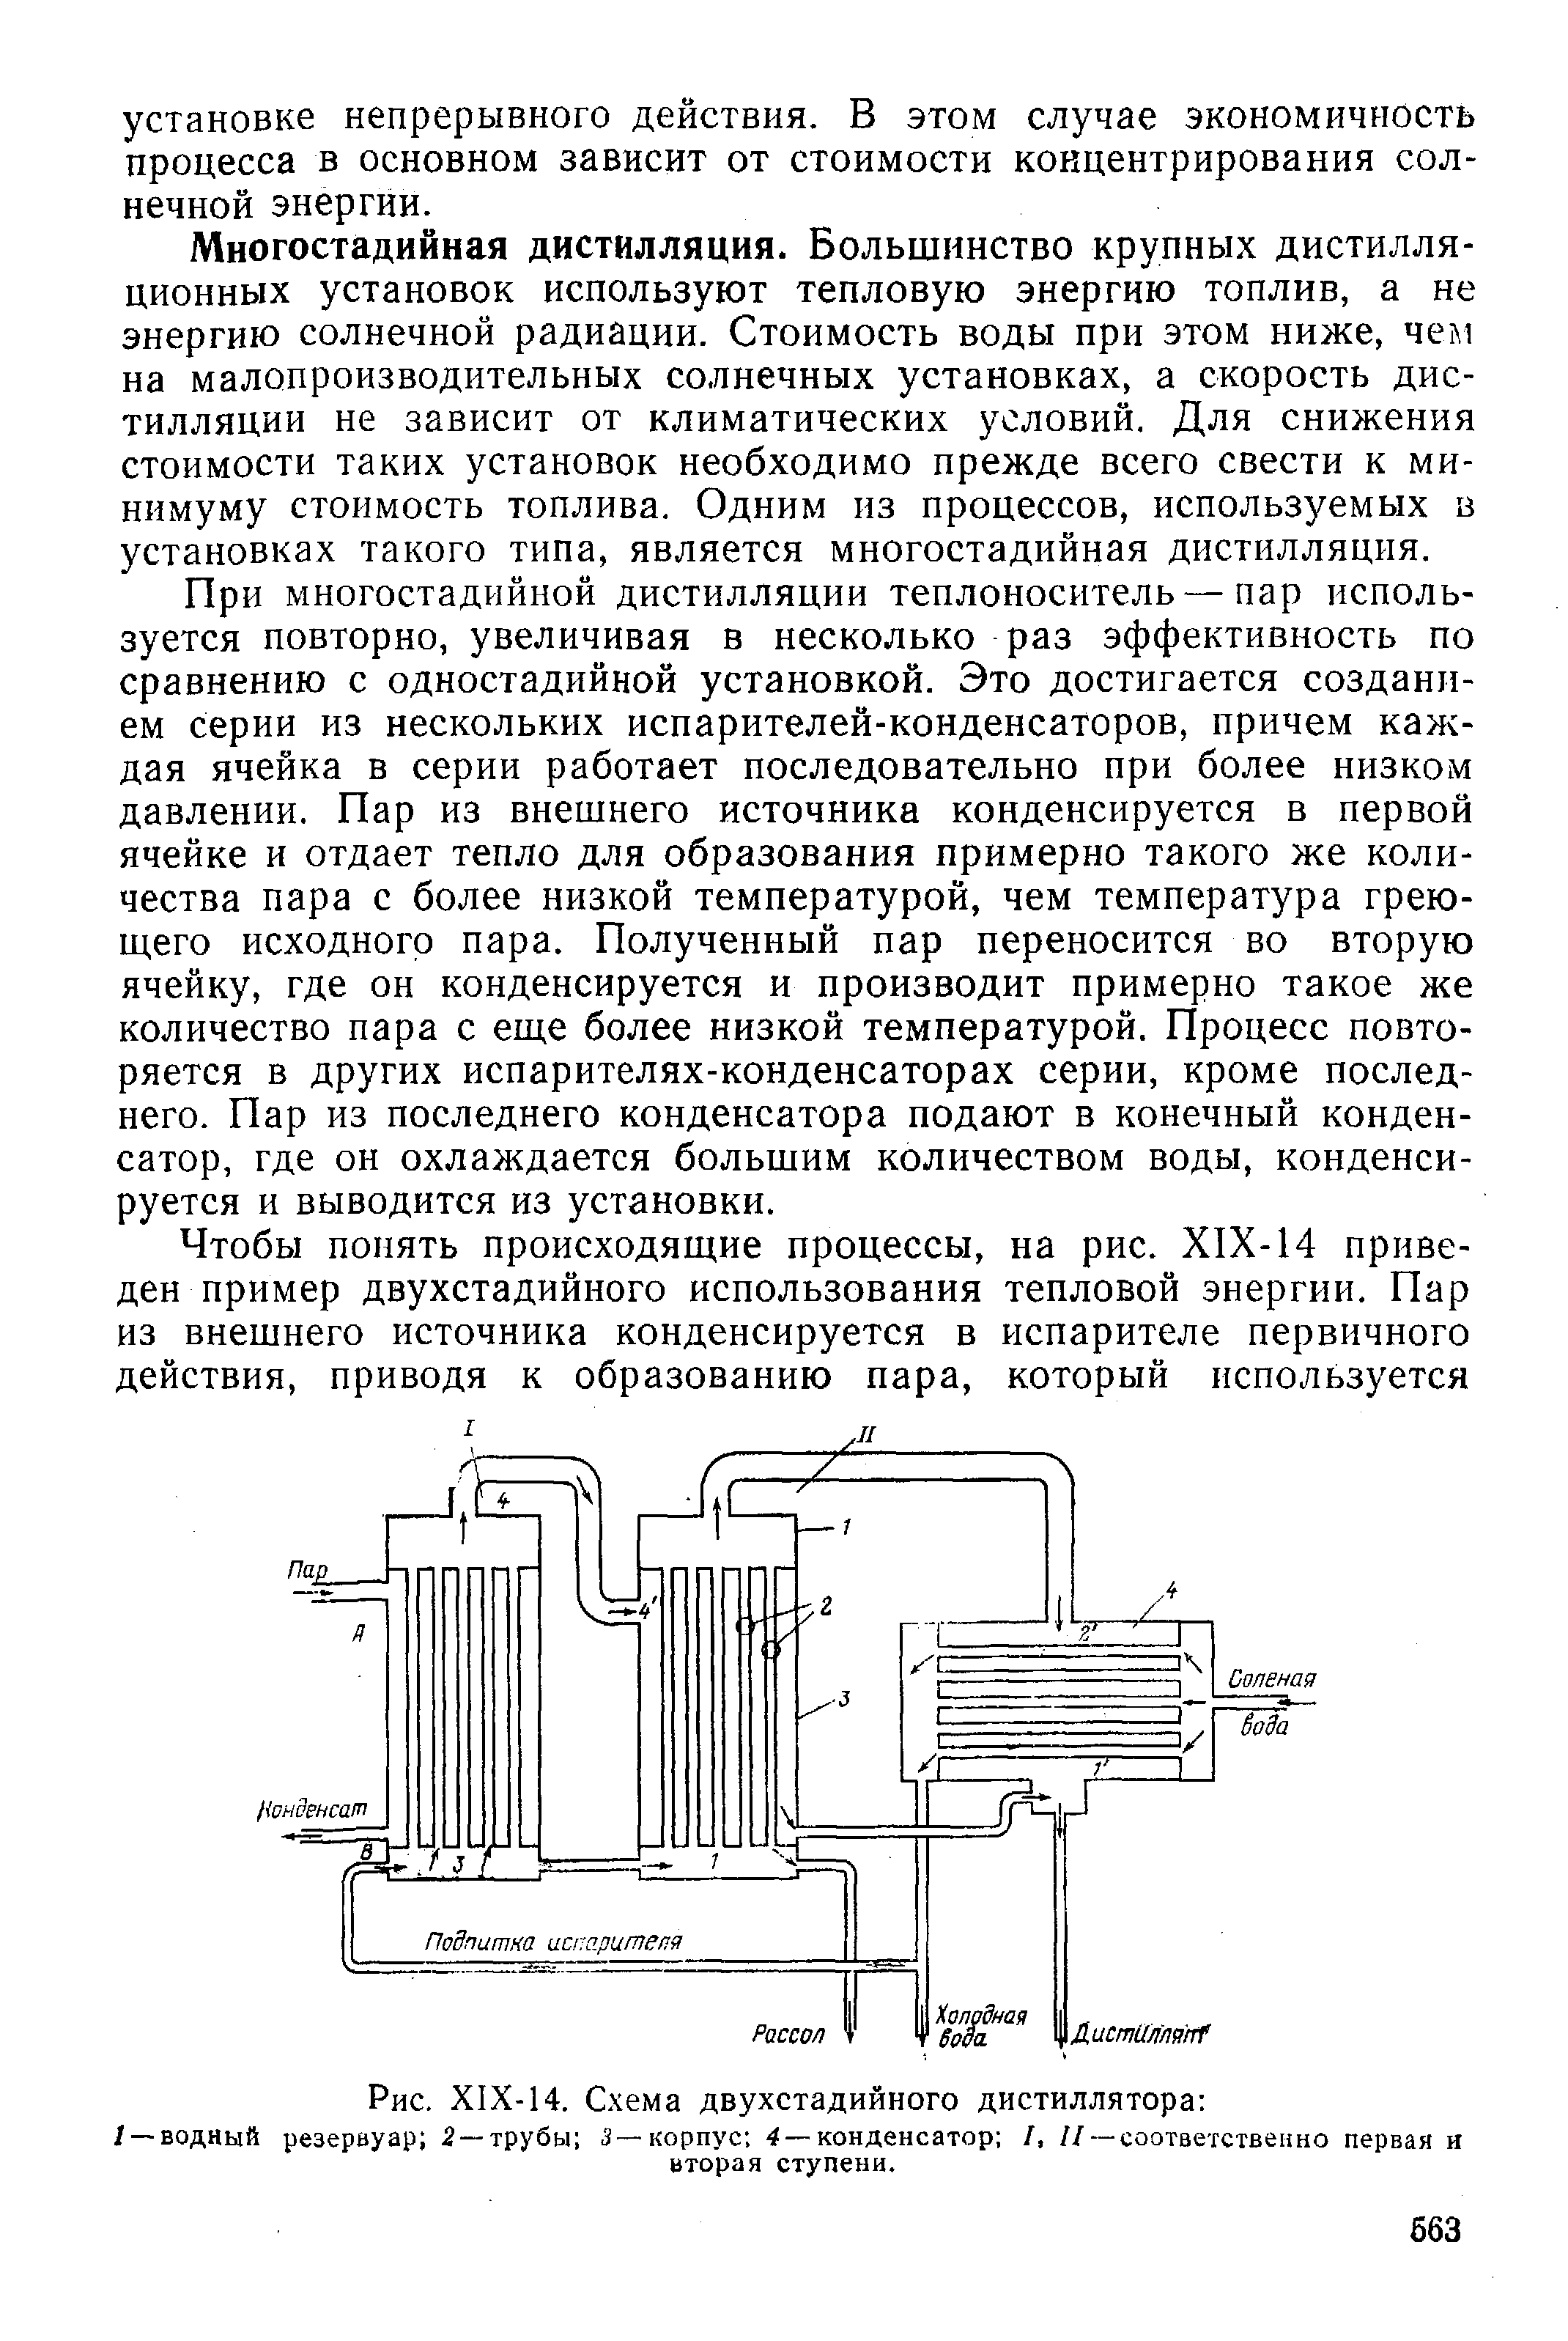 Схема дистиллятора дэ 4 2